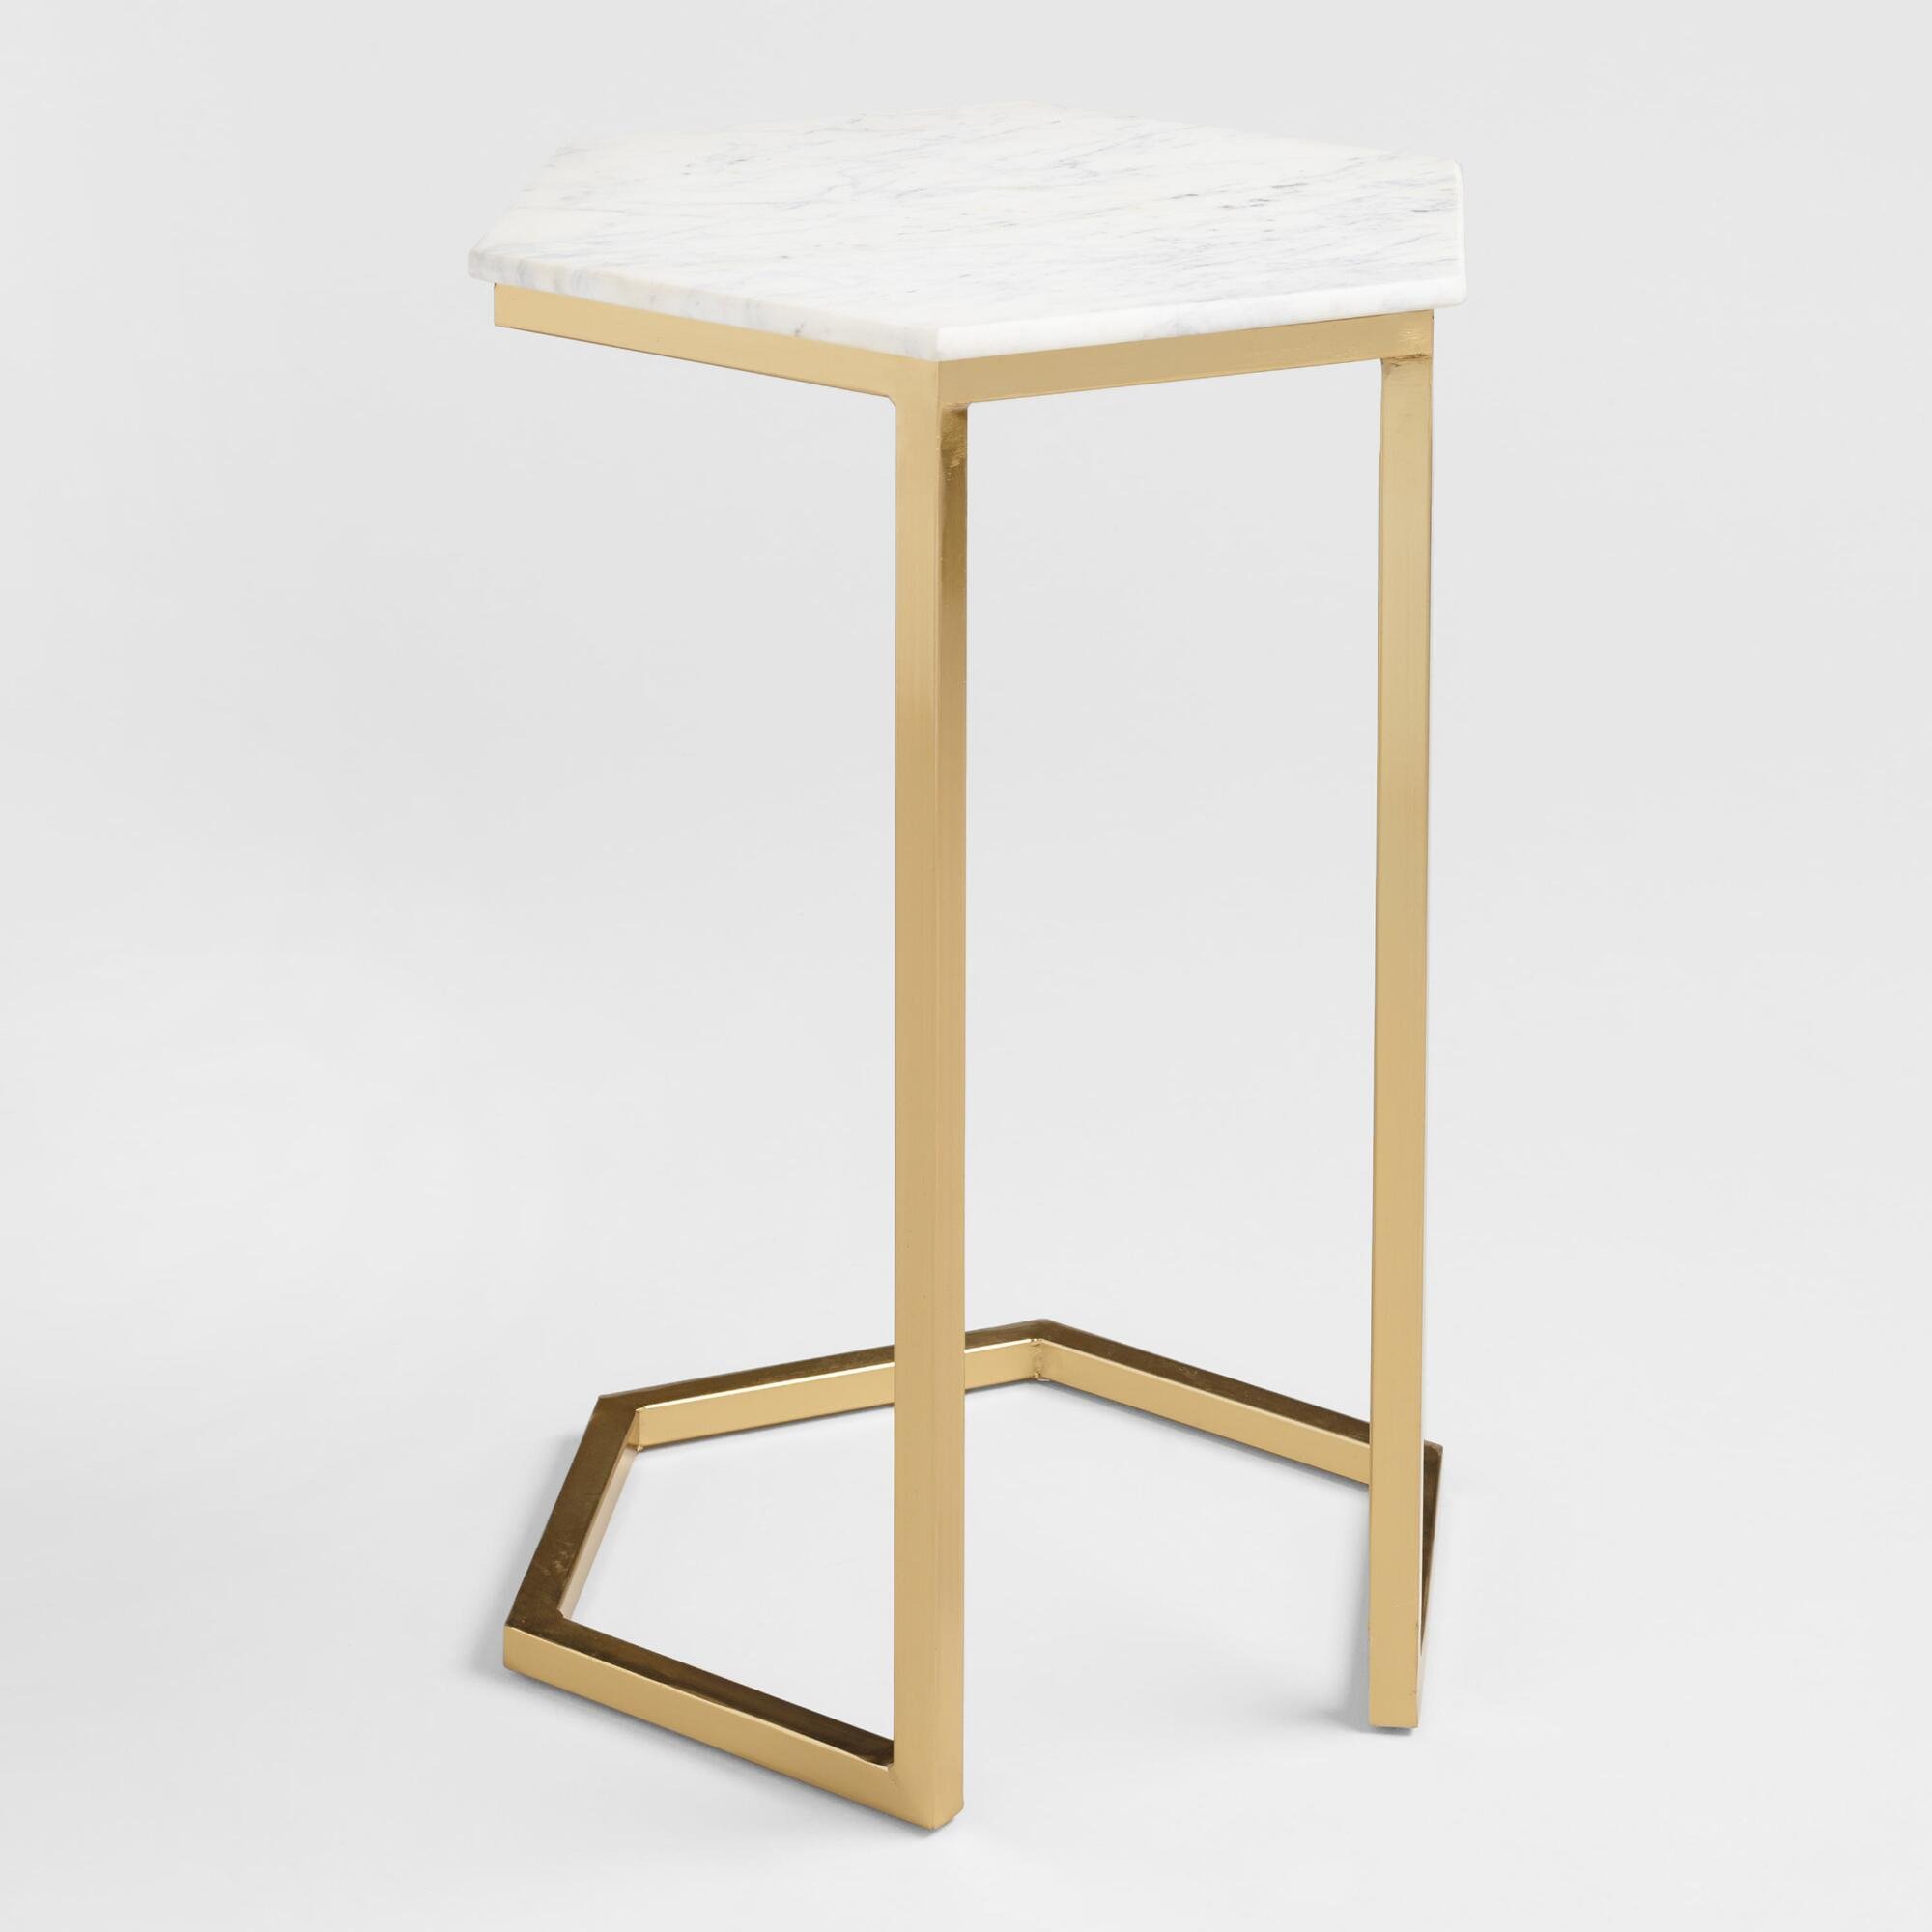 Стол высота 75 см. Столик приставной 491113 Side Table f-101-112 d33 h66. Приставной столик uilc14782. Приставной столик rhet золотой. Приставной столик Soho.